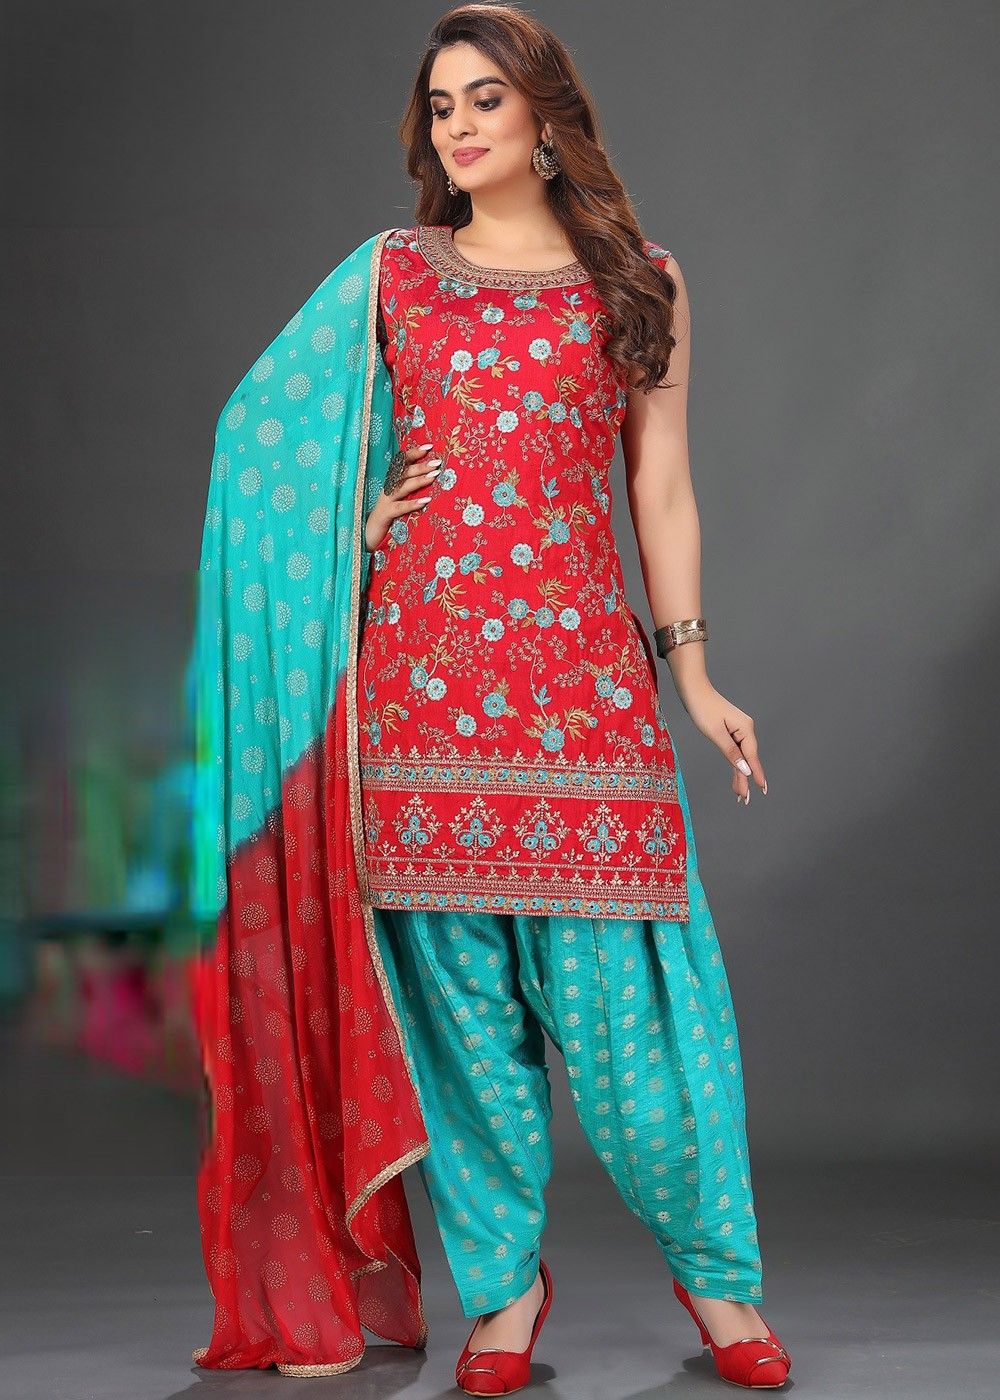 Red Wedding Punjabi Suits, Red Wedding Punjabi Salwar Kameez and Red  Wedding Punjabi Salwar Suits Online Shopping